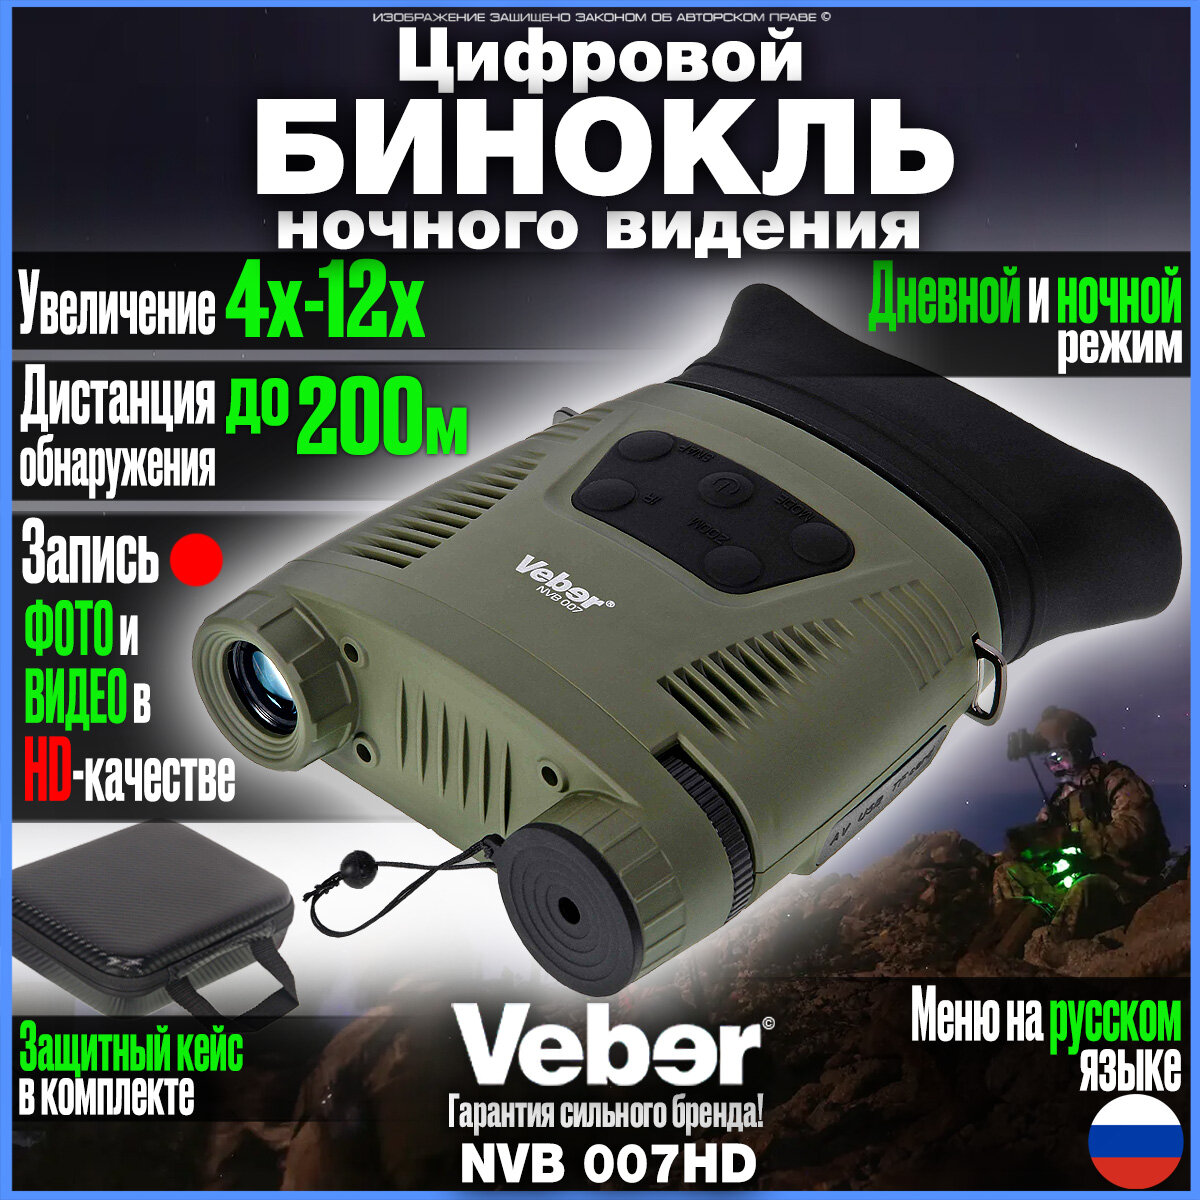 Цифровой армейский бинокль ночного видения для охоты и наблюдений с записью Veber NVB 007HD